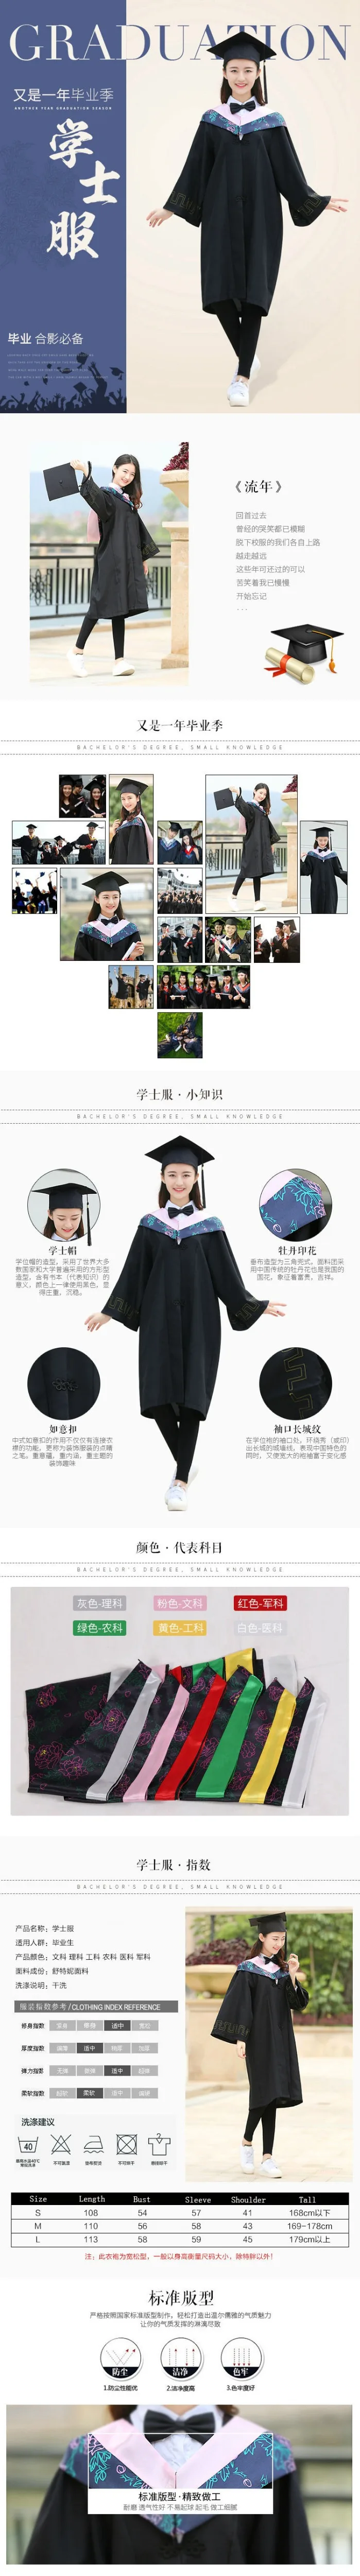 Высококачественная школьная форма, халаты, платье для выпускного, Университетская одежда для выпускного, костюм и Кепка